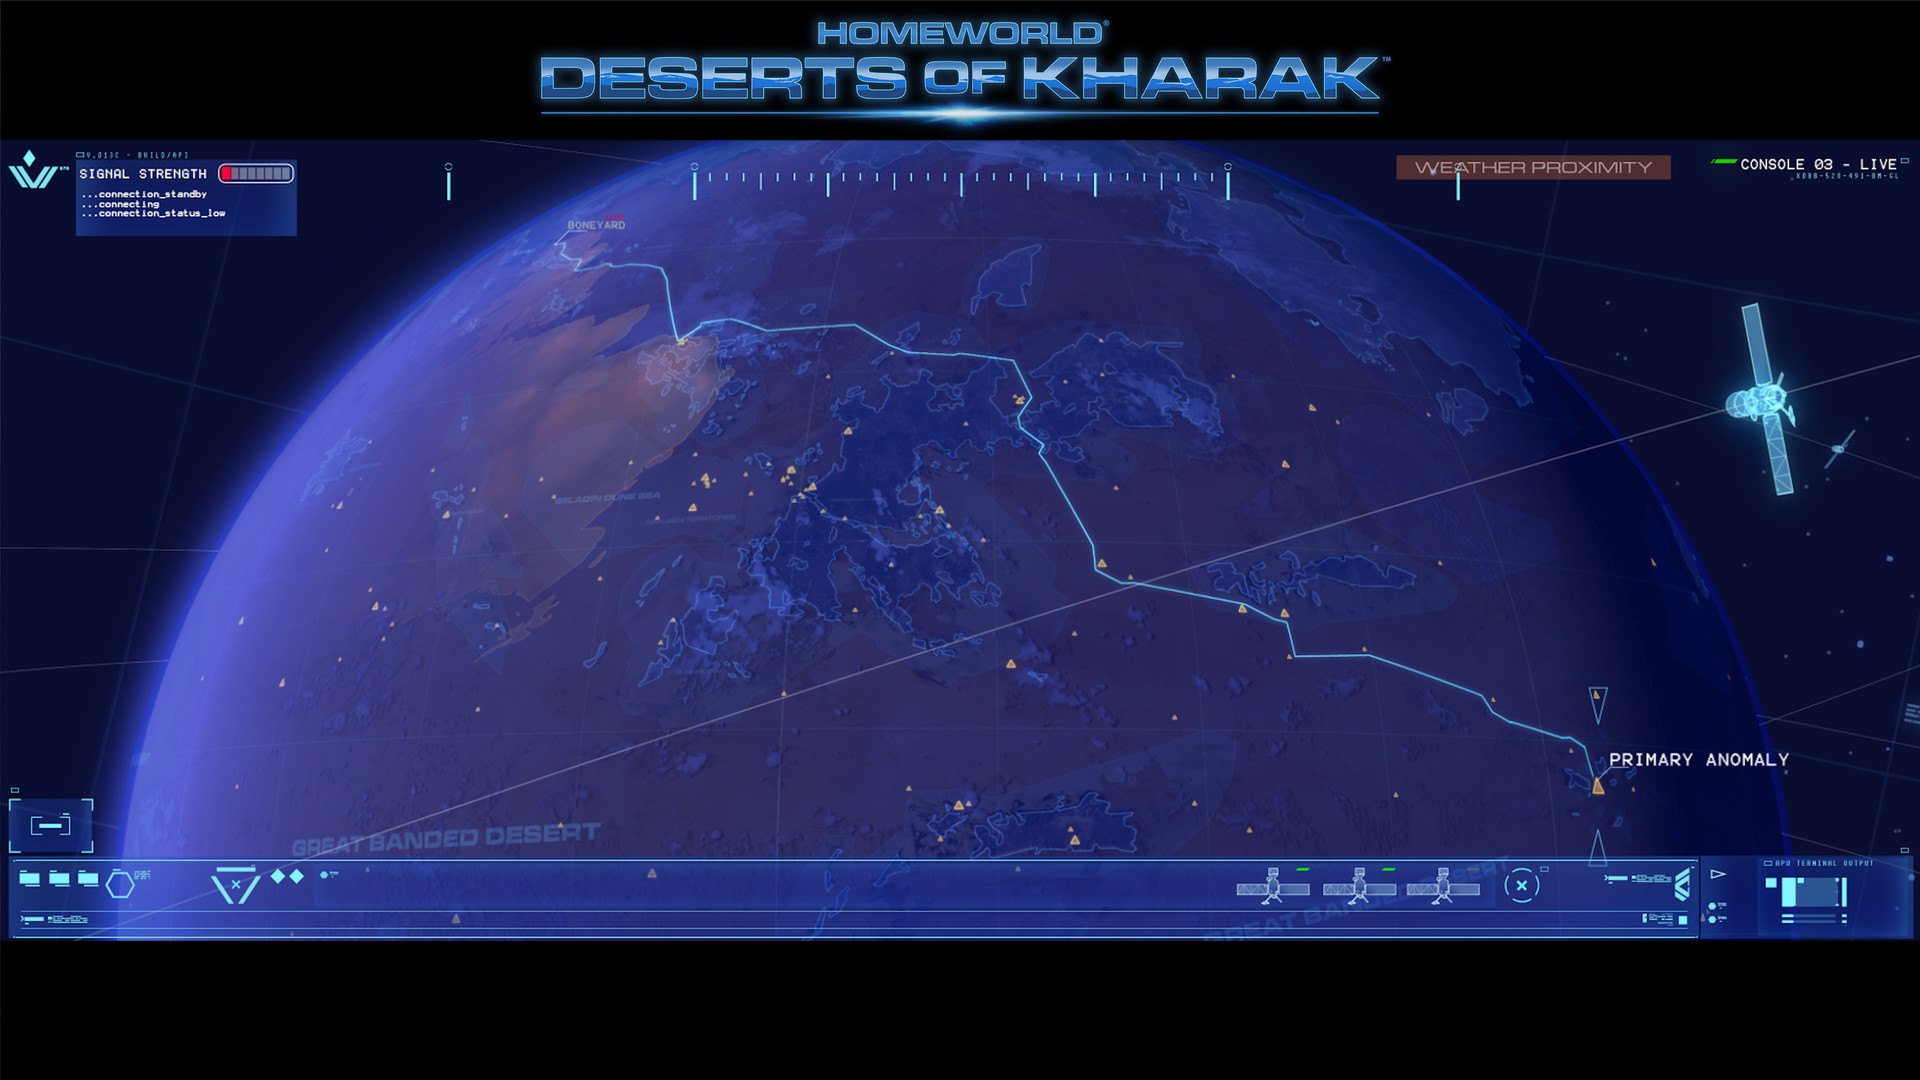 ԰ɳĮHomeworld: Deserts of Kharakv1.0޸